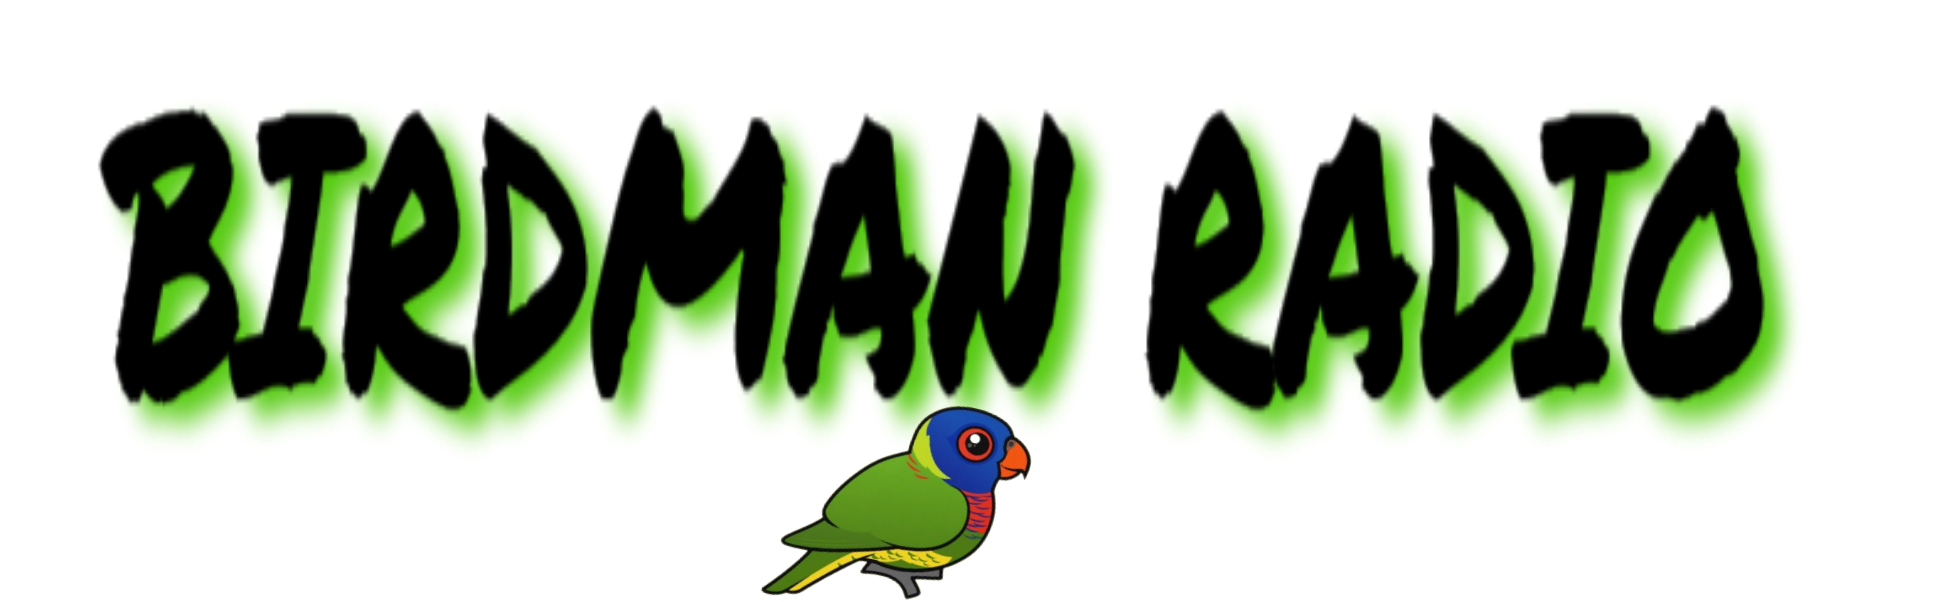 birdman_logo